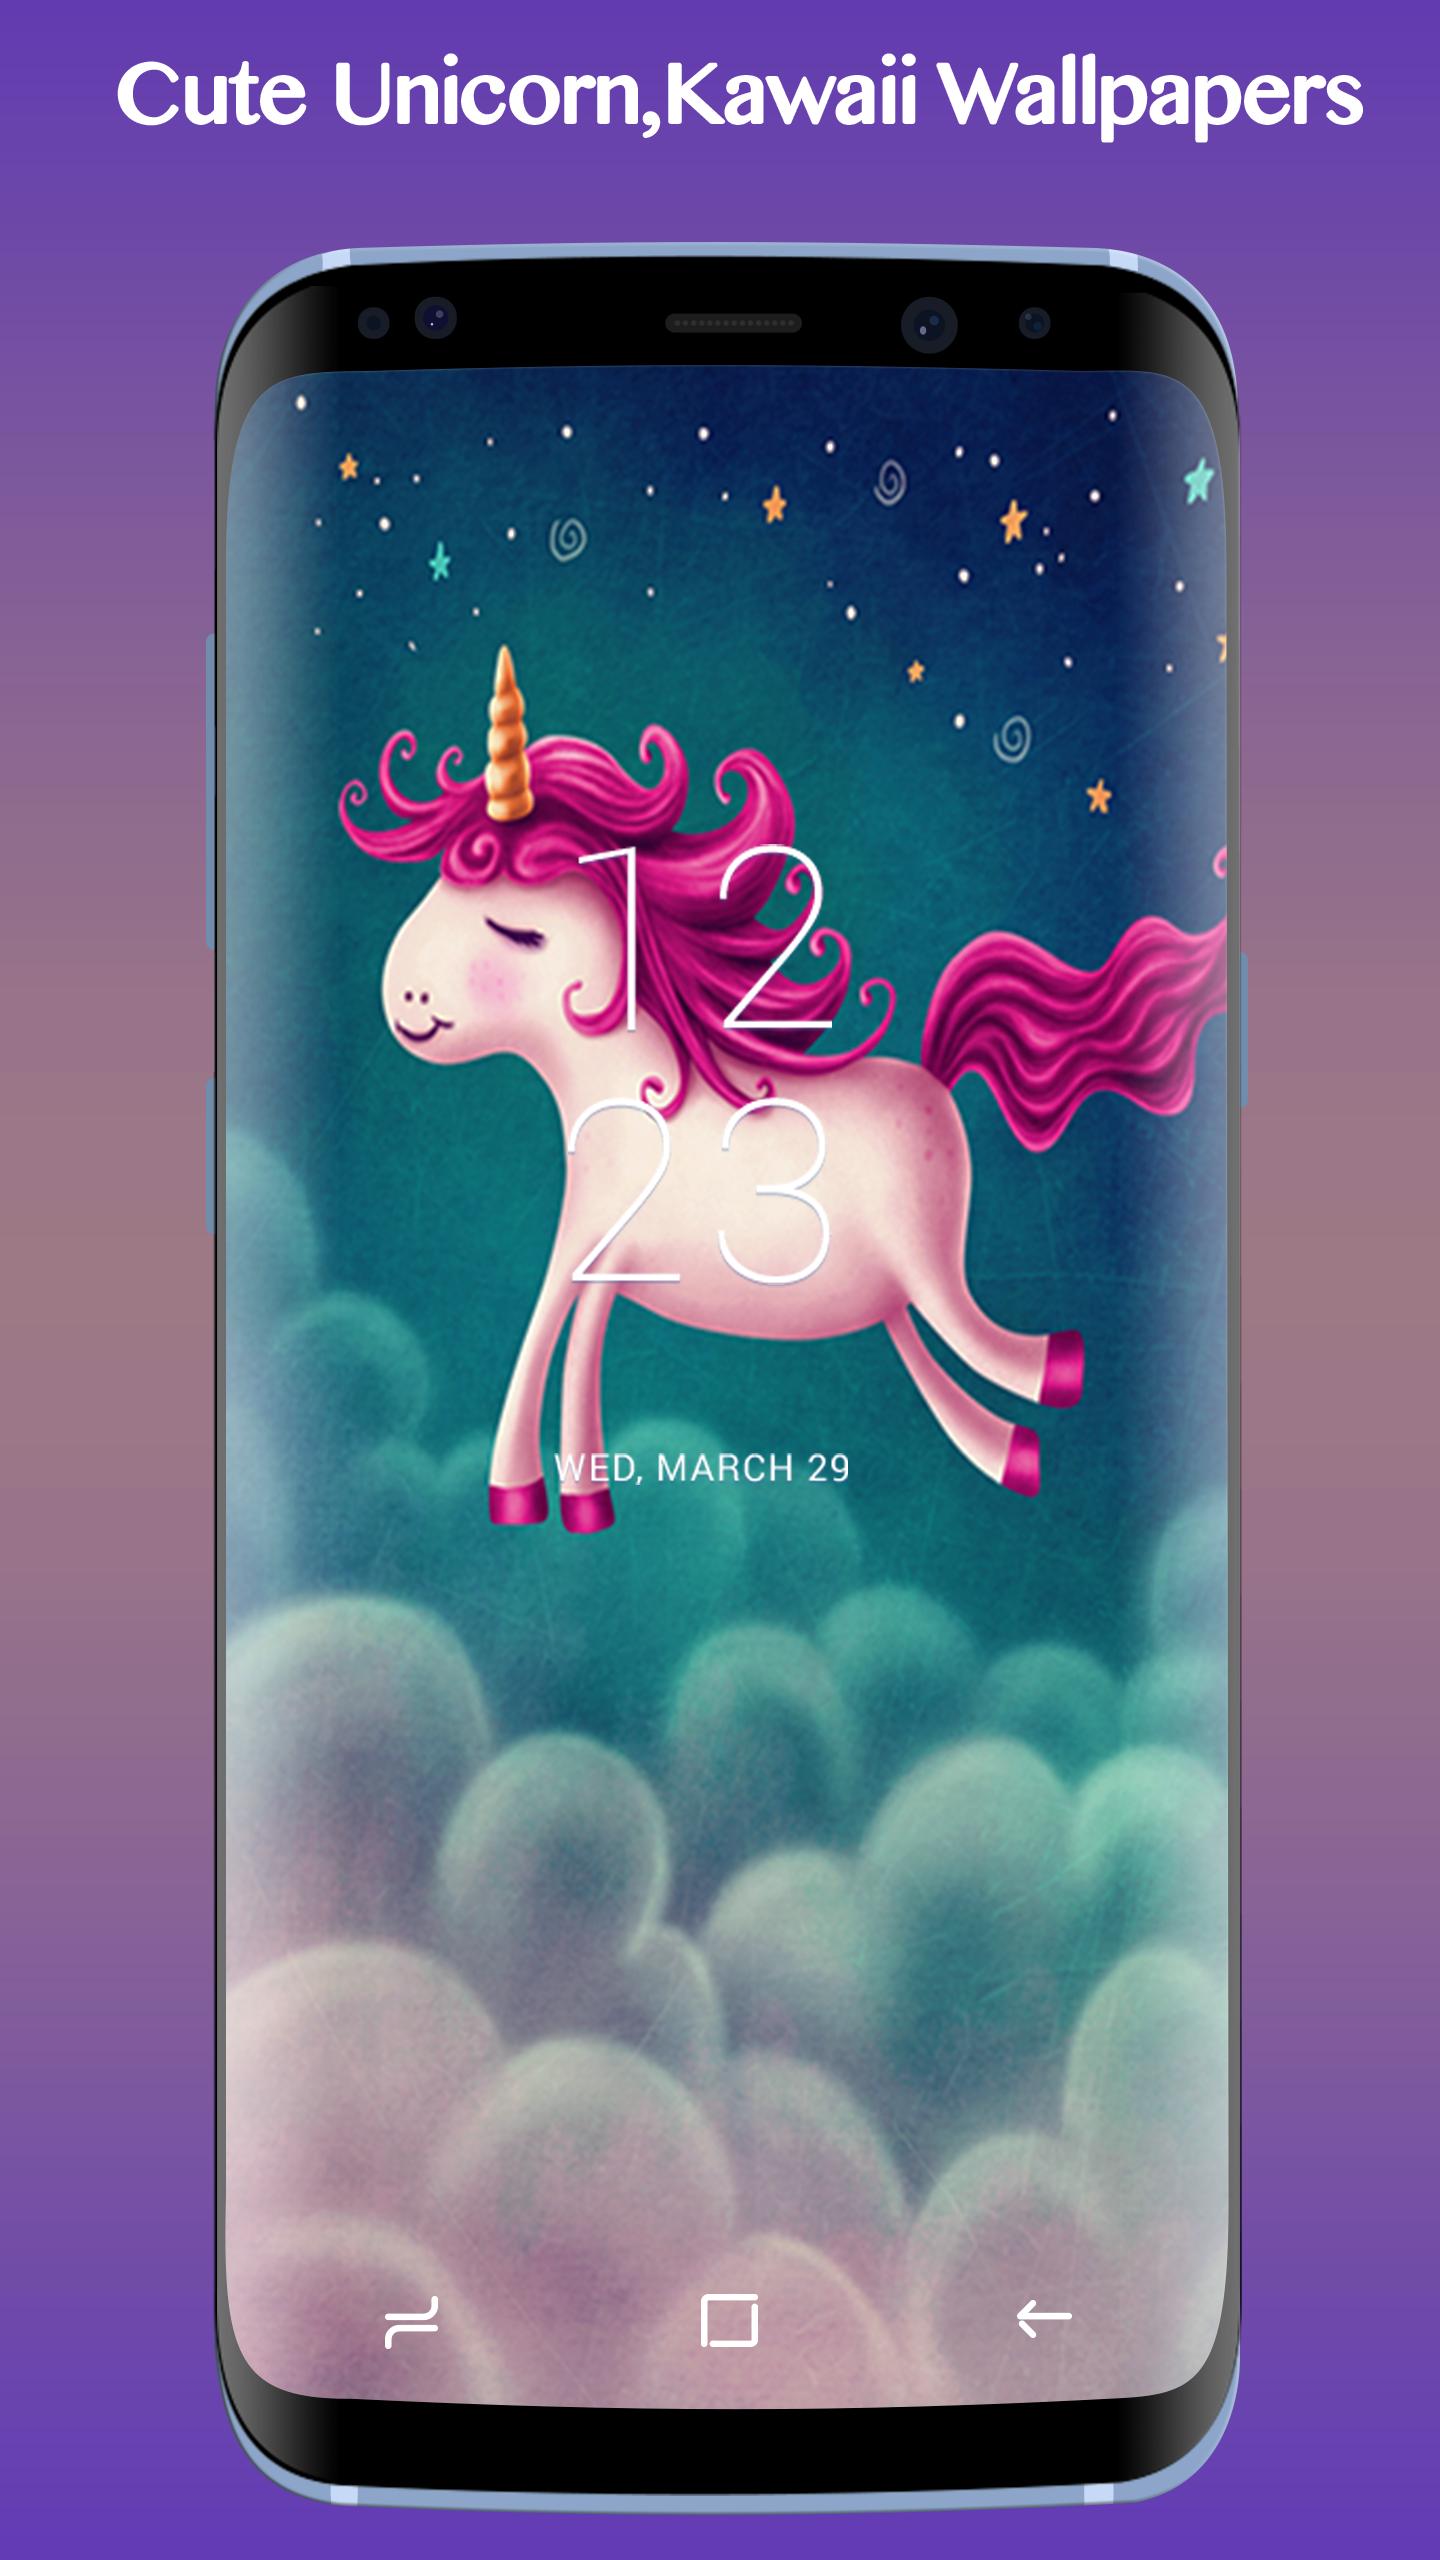 Khi nhắc đến tinh thần dễ thương và đáng yêu, bạn không thể bỏ qua các hình ảnh Unicorn. Những bức hình Cute Unicorn, Kawaii Wallpapers sẽ mang đến cho bạn cảm giác vui vẻ, hạnh phúc và đáng yêu khi sử dụng chúng như hình nền hoặc nghệ thuật trang trí.